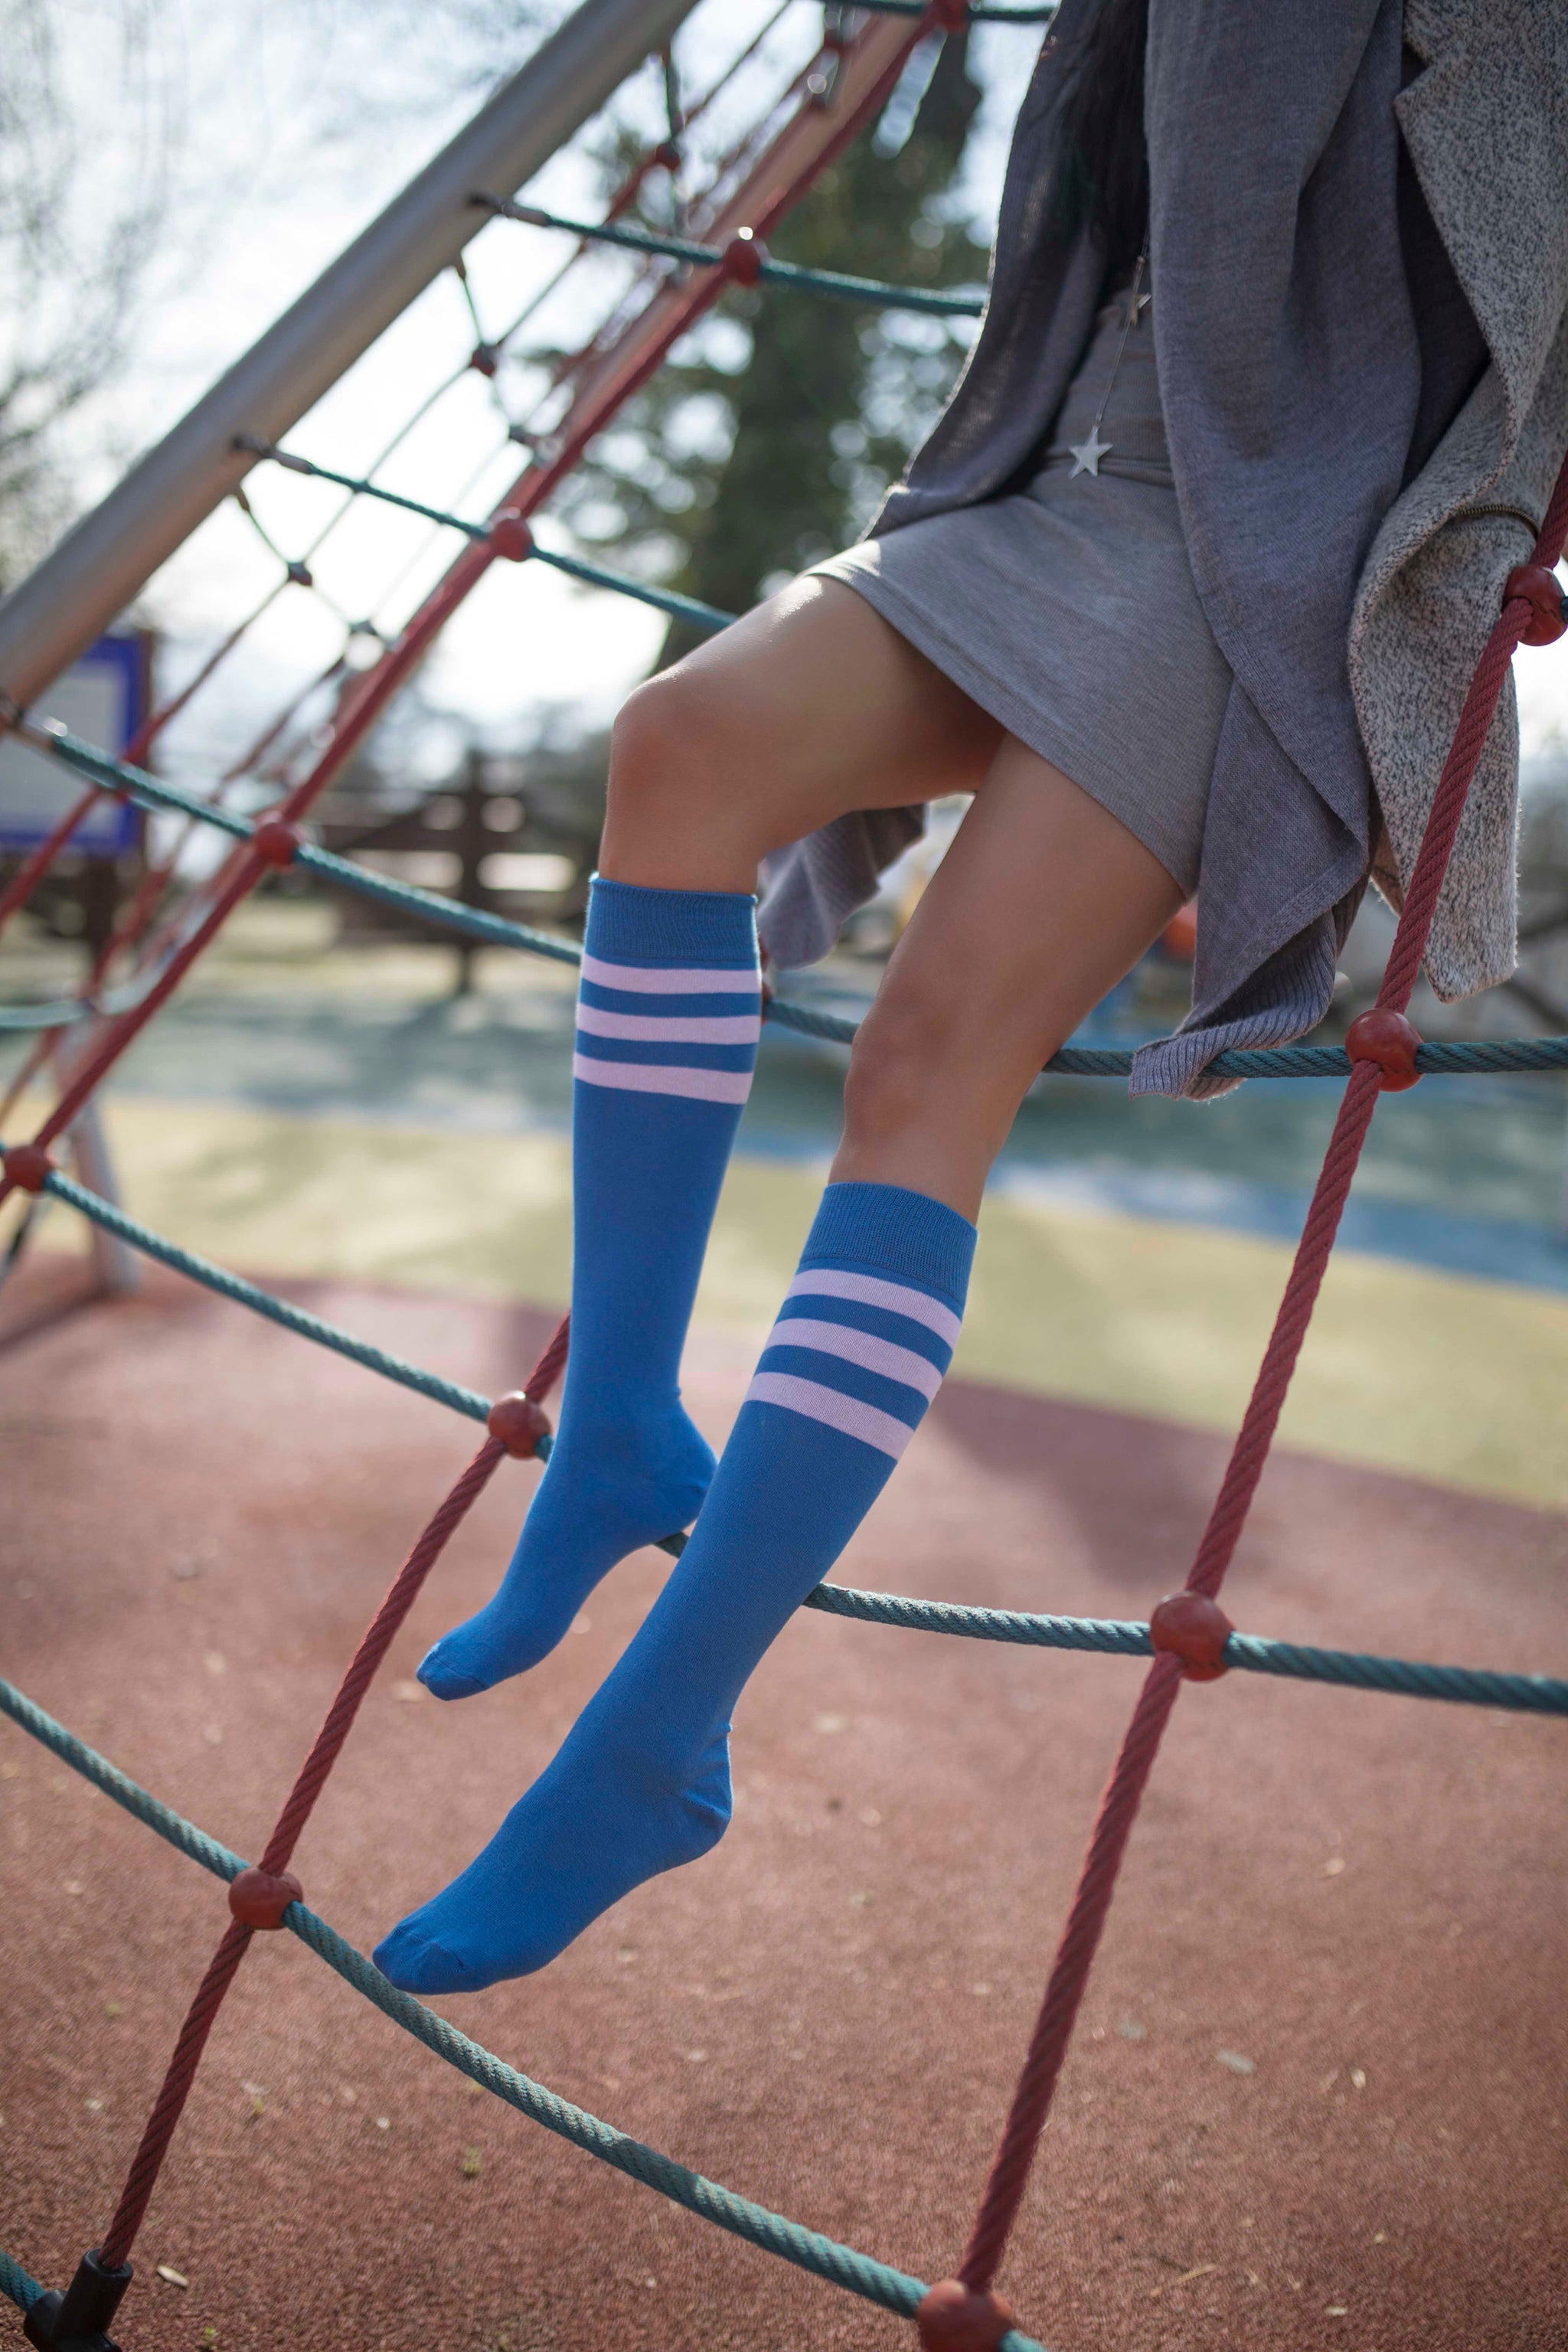 Women's Modern Stripe Knee High Socks Set